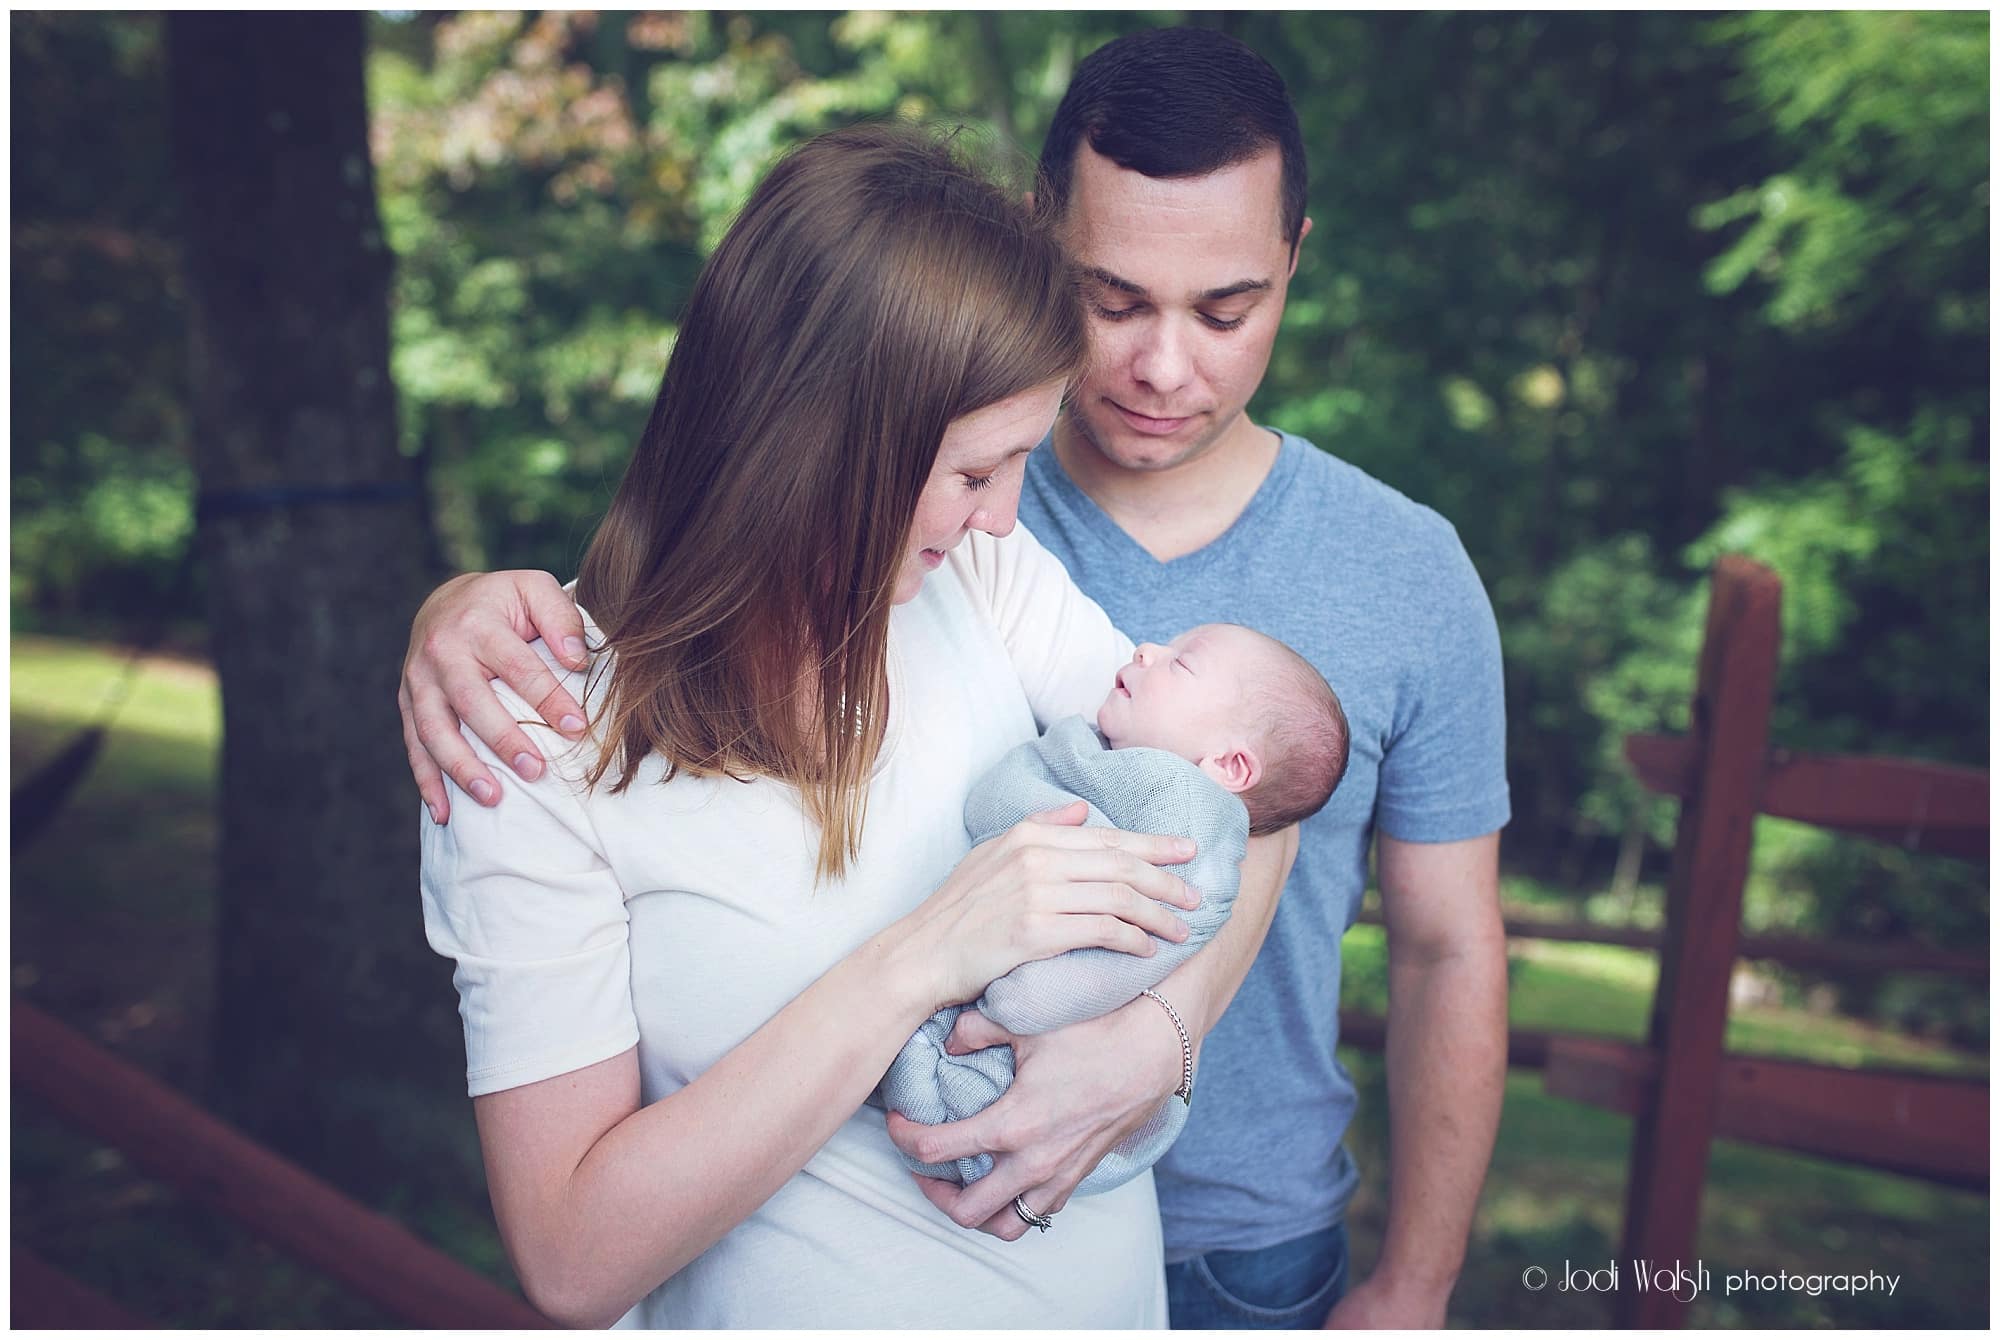 backyard family portrait with newborn